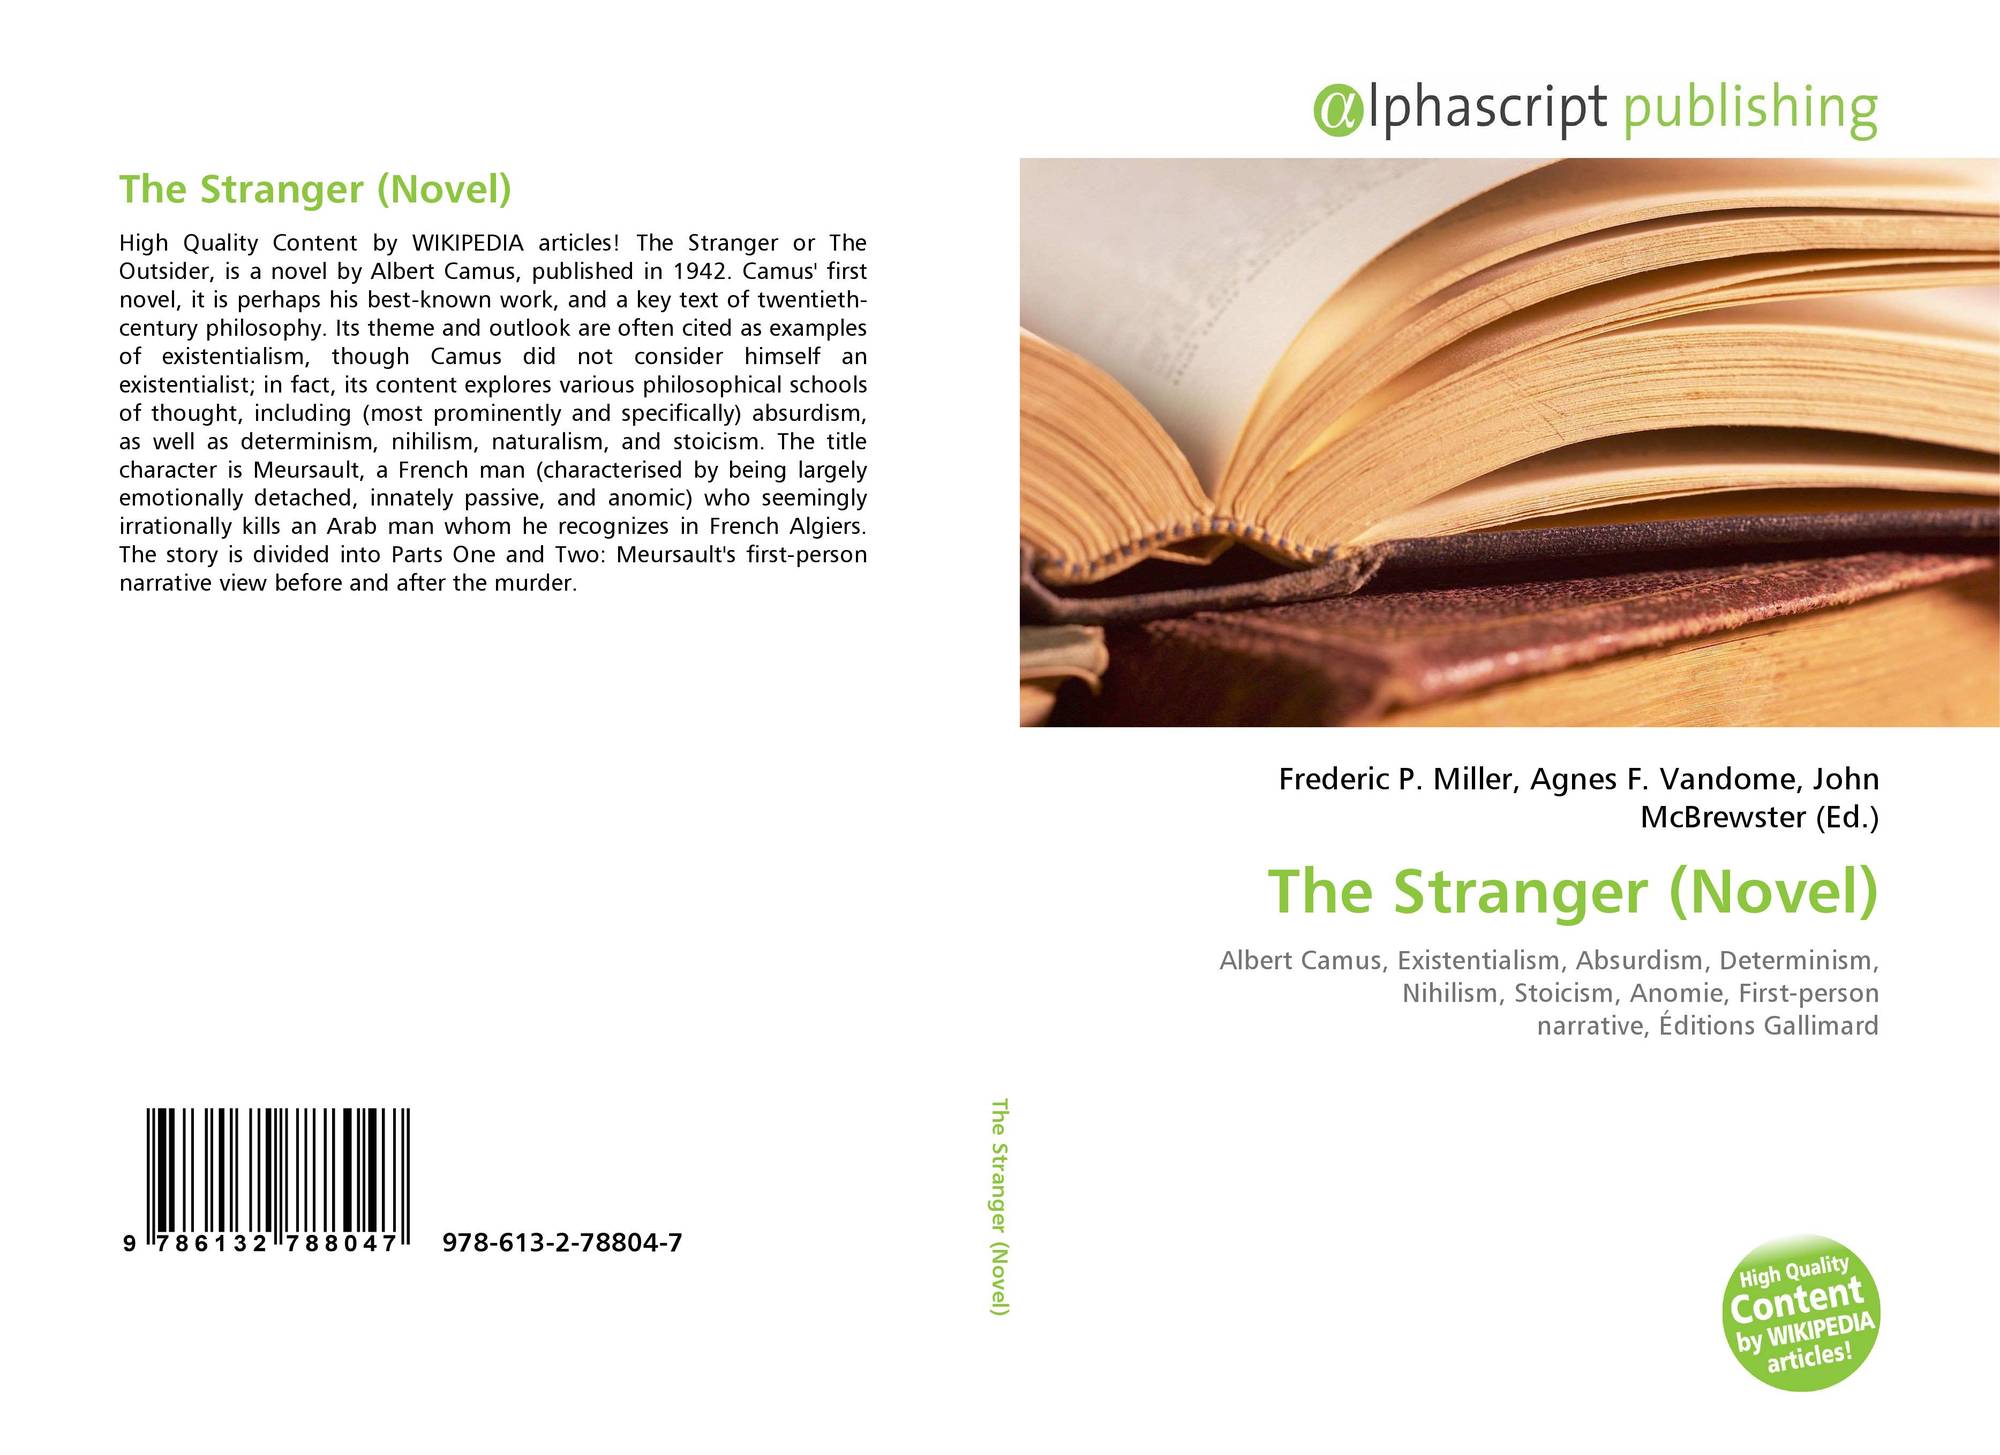 The Stranger Novel 978 613 2 78804 7 6132788042 9786132788047